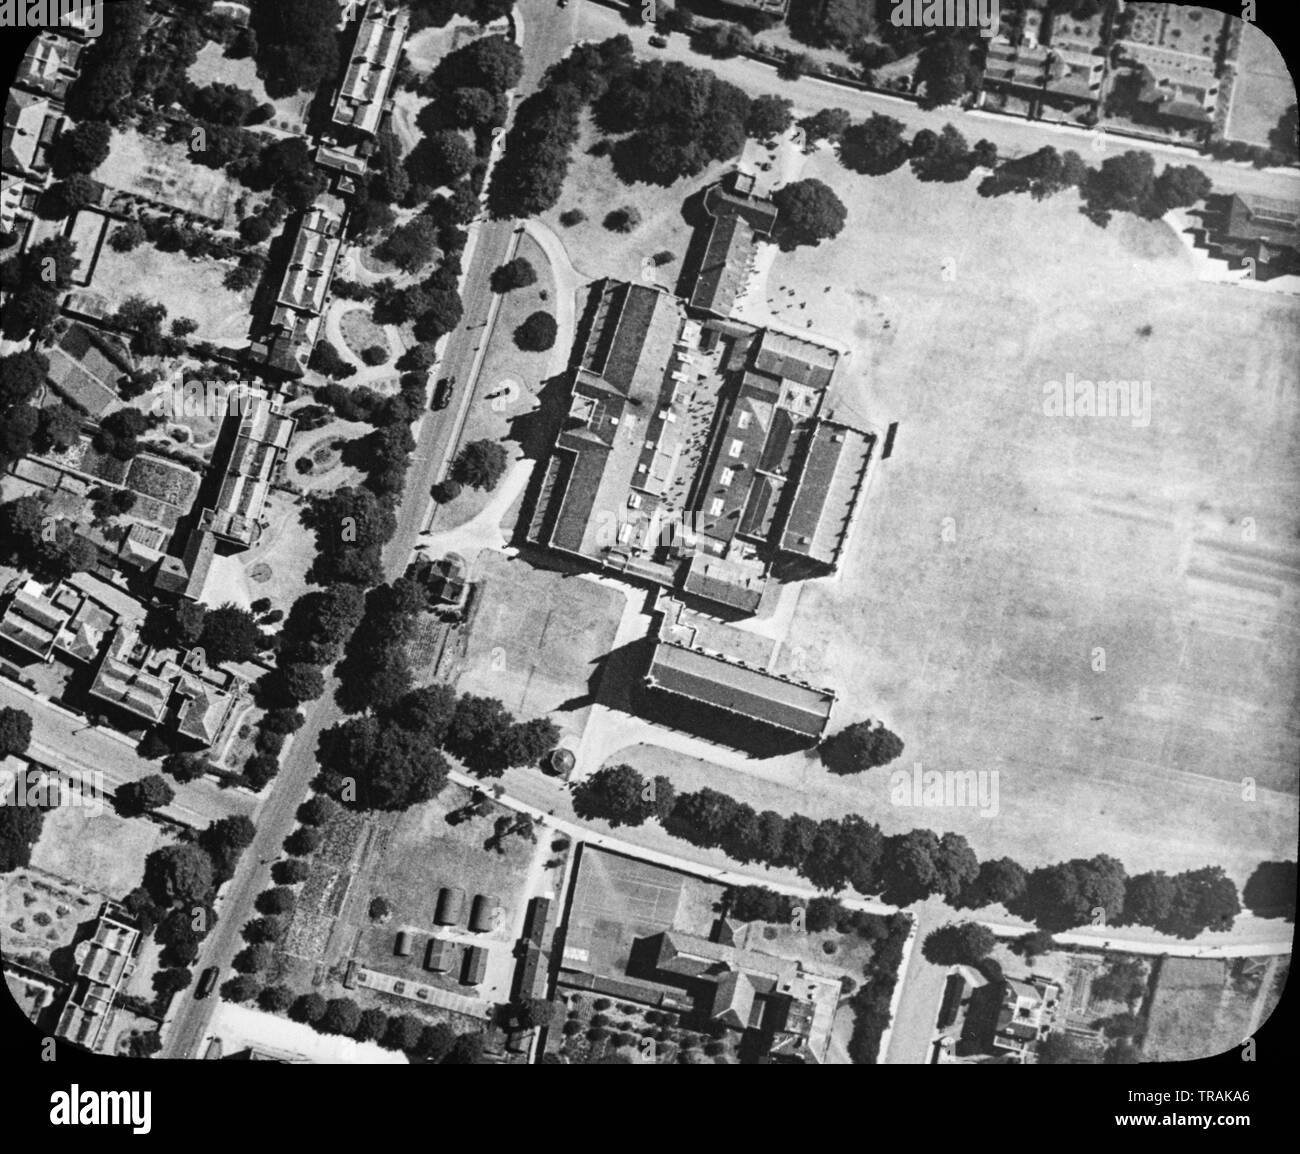 Un bianco e nero fotografia aerea adottate il 21 giugno 1921 mostra Cheltenham College e la zona circostante, nel Gloucestershire, Inghilterra. Foto Stock